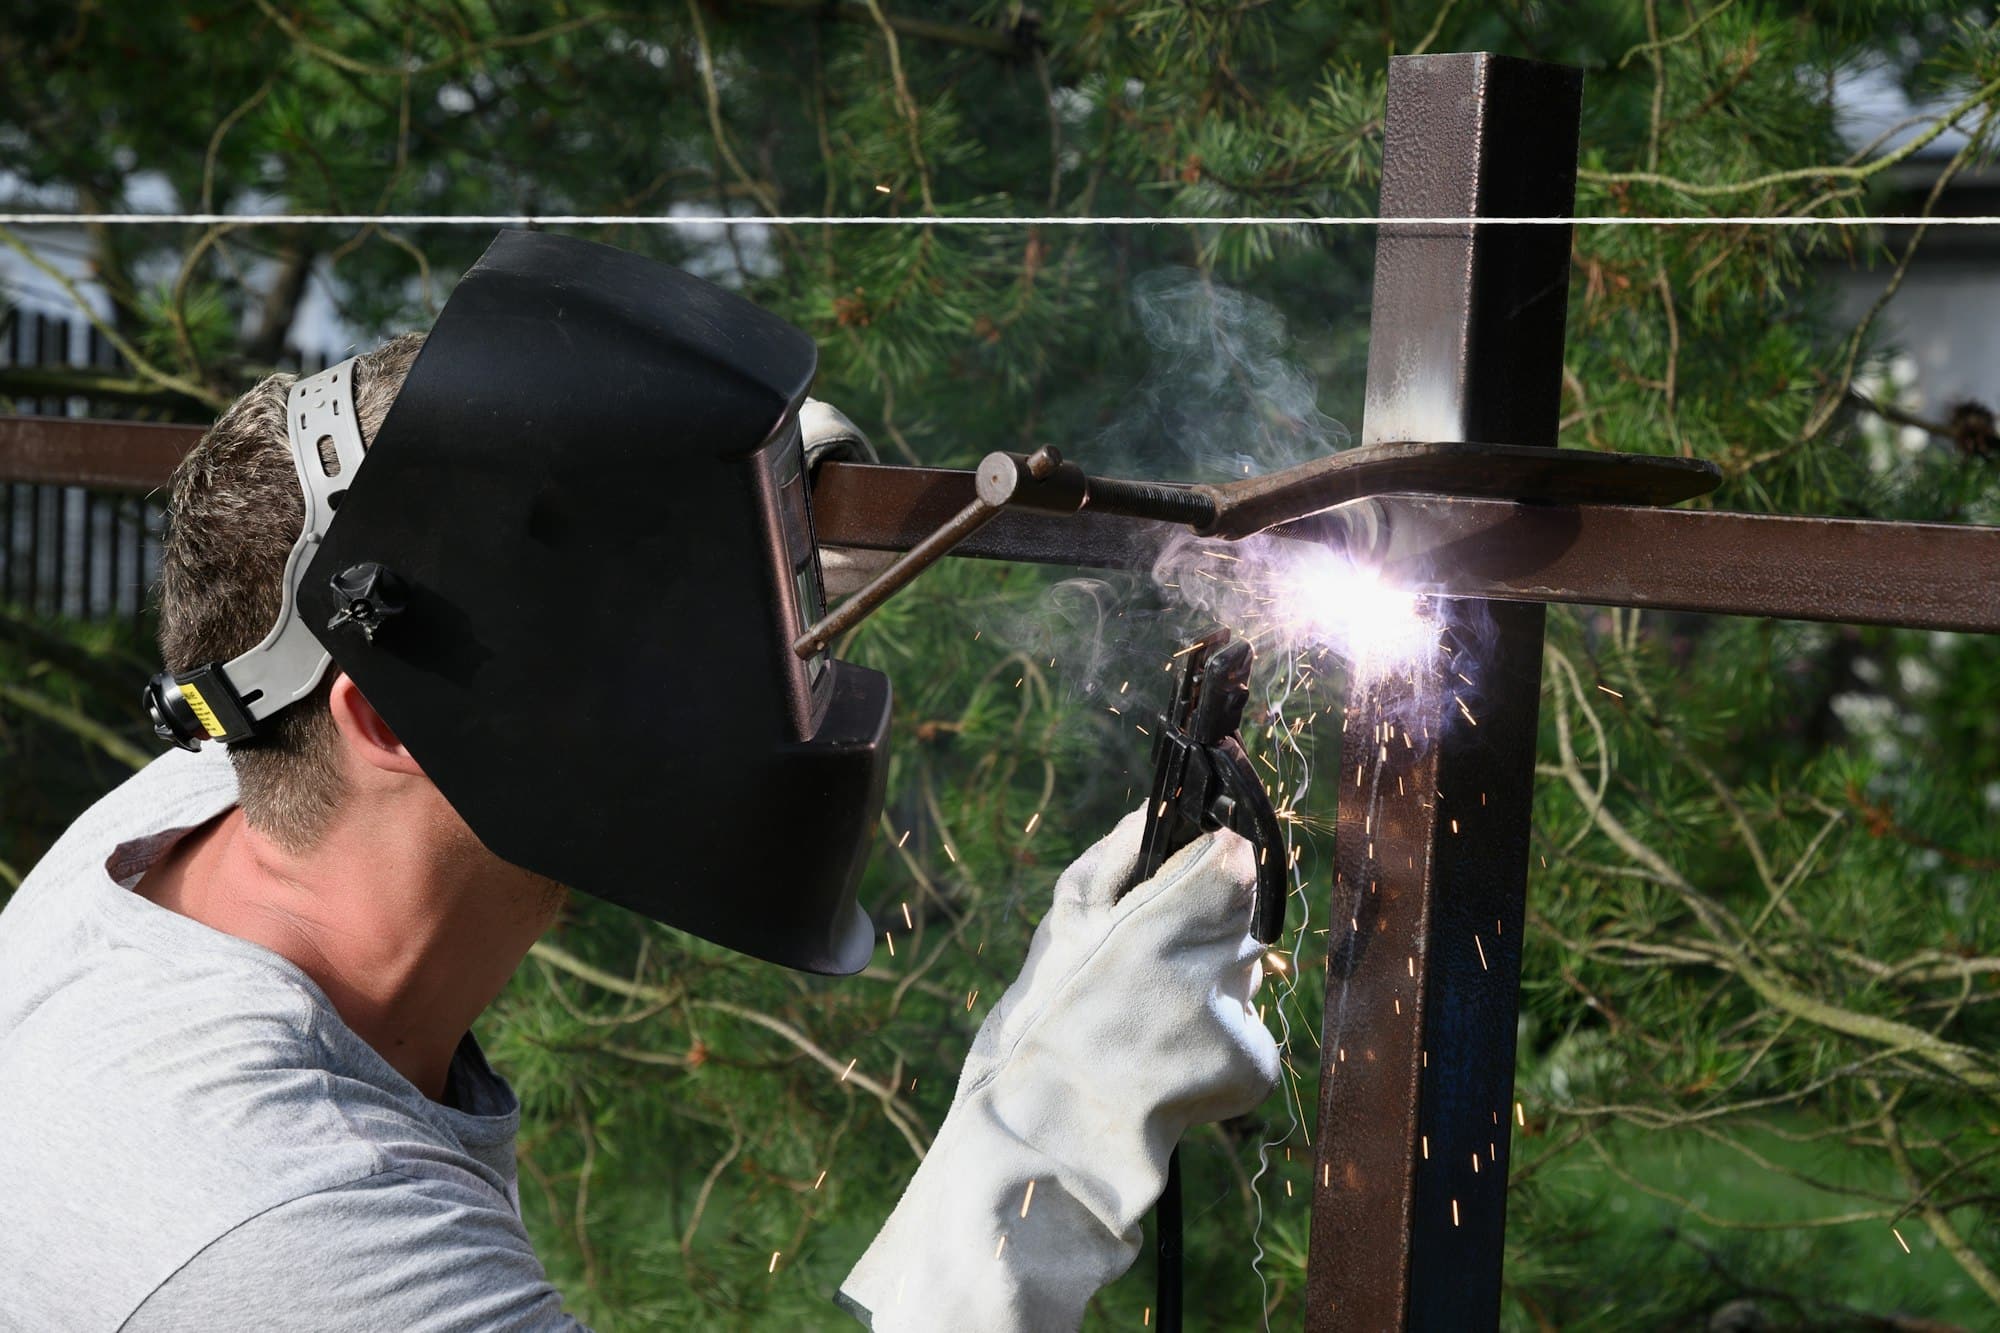 Un uomo con una maschera protettiva e guanti speciali sta costruendo una recinzione metallica saldata.